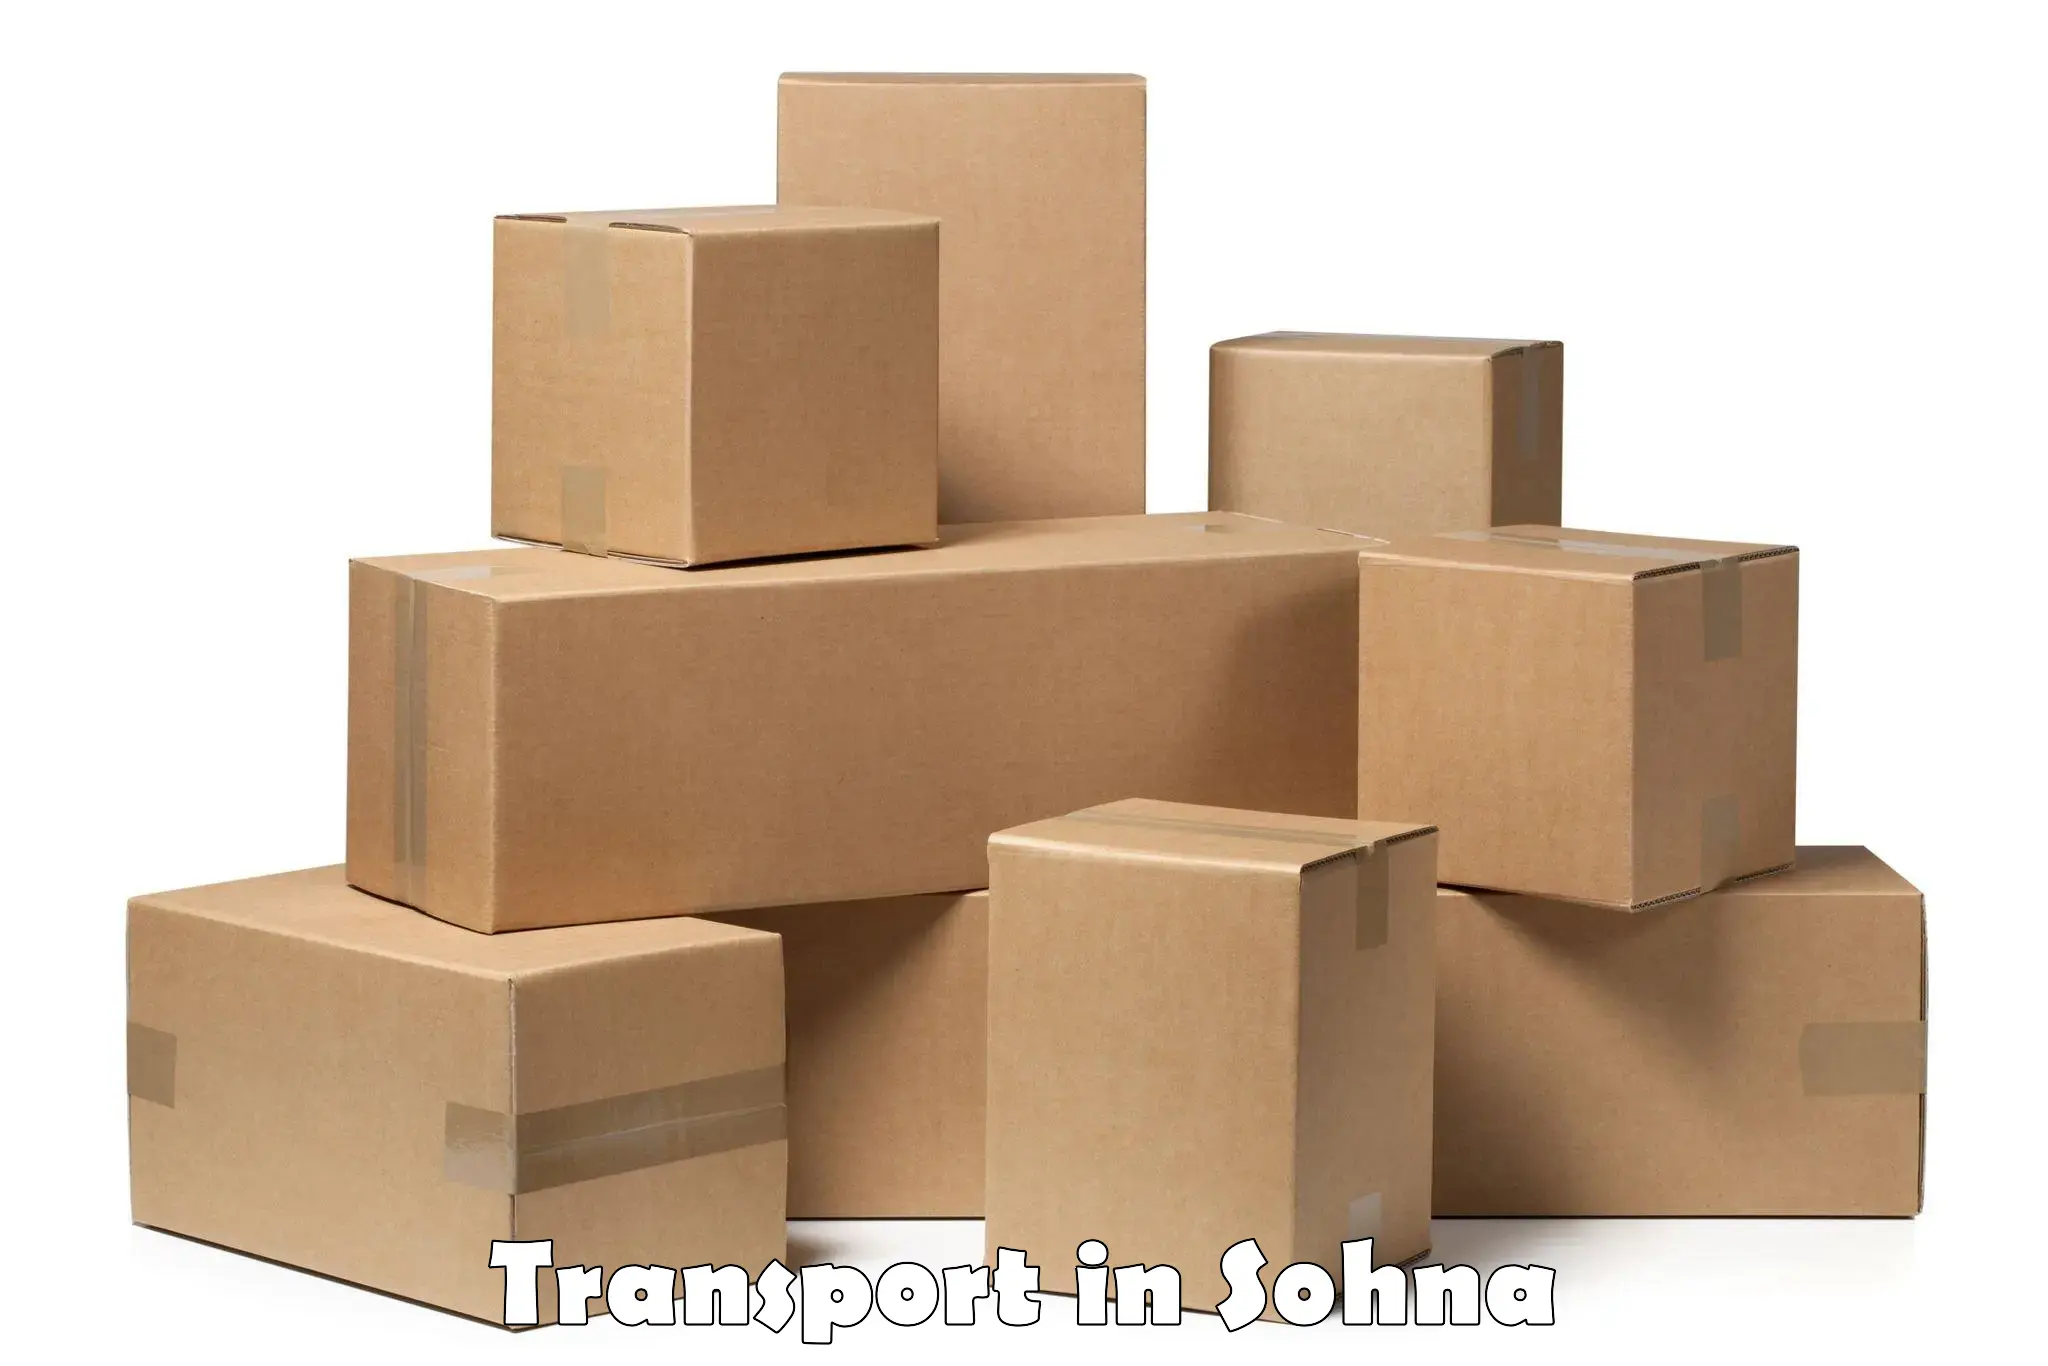 Furniture transport service in Sohna